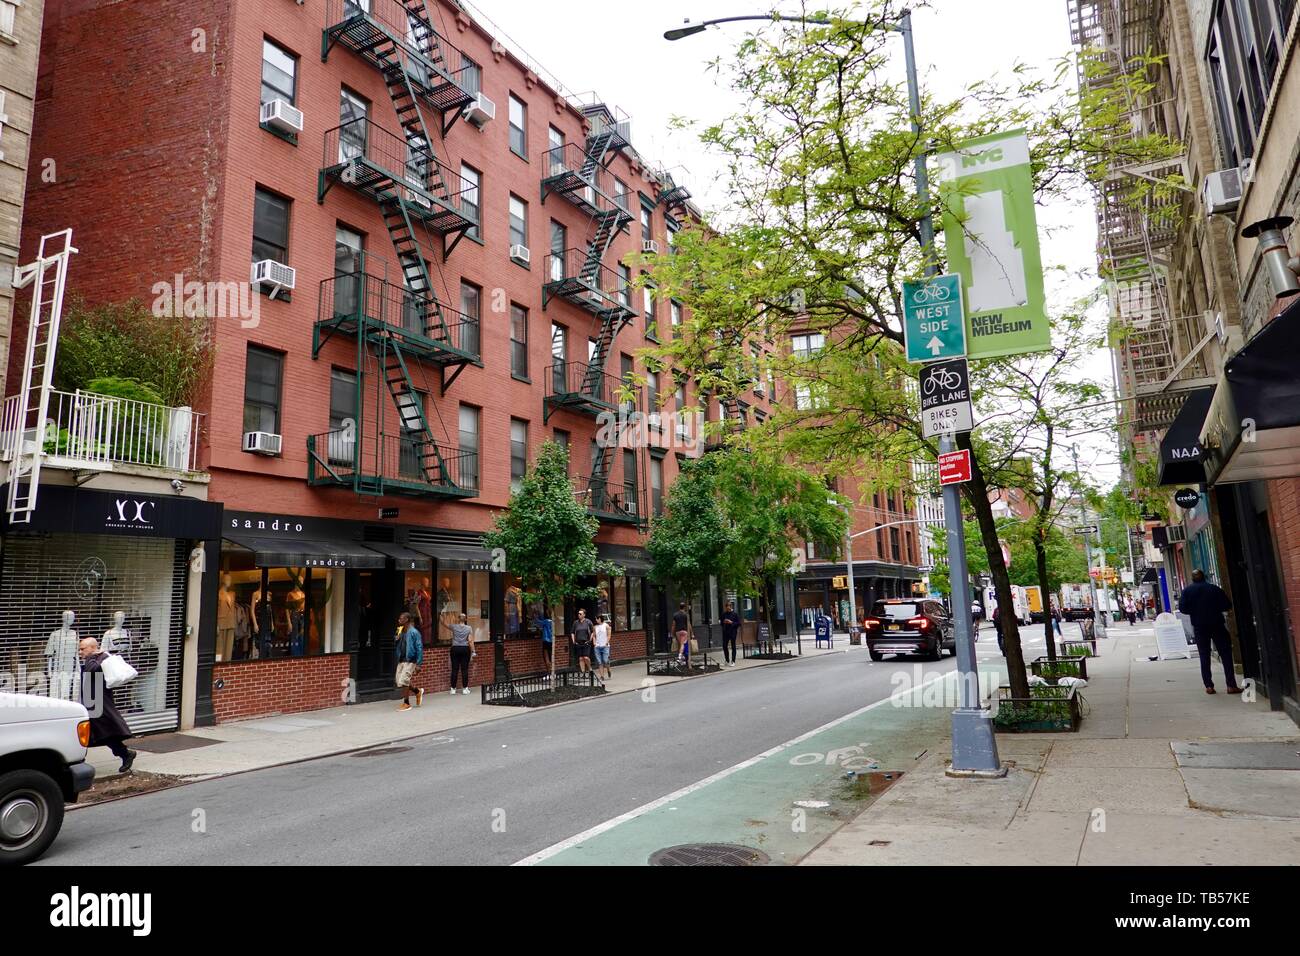 Prince Street, looking west, in SoHo, New York, NY, USA Stock Photo